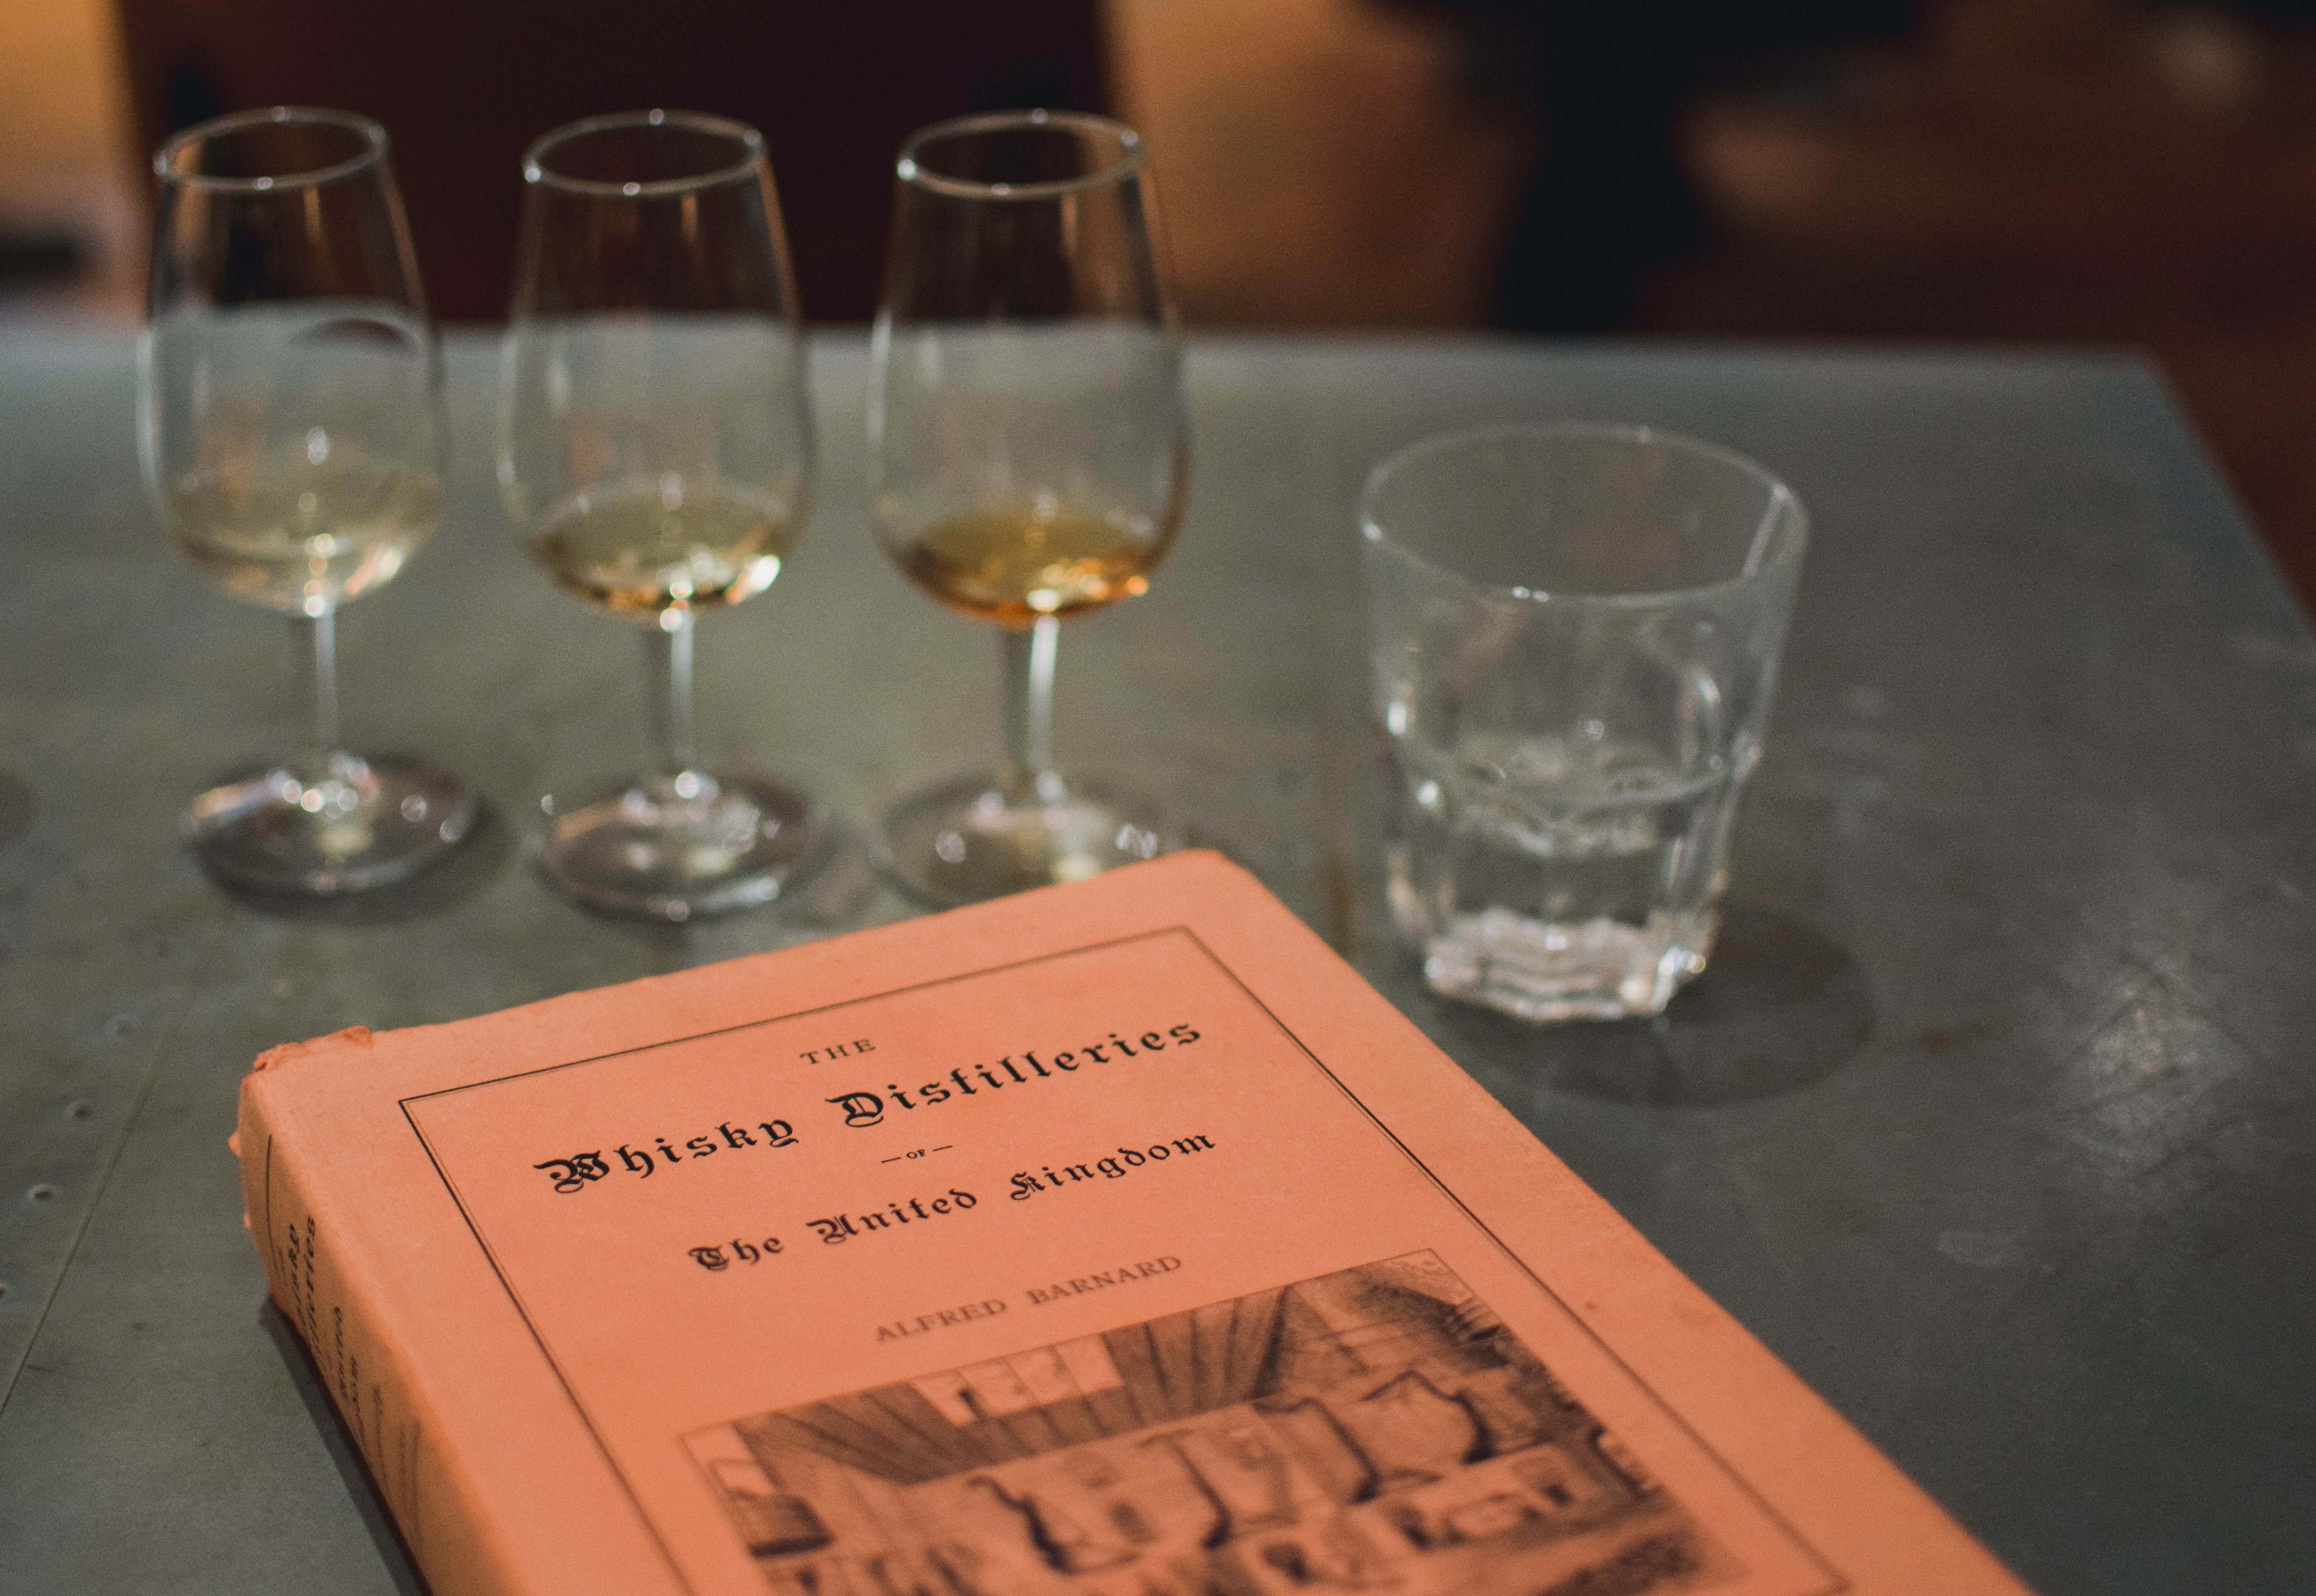 Whisky Distilleries' book 